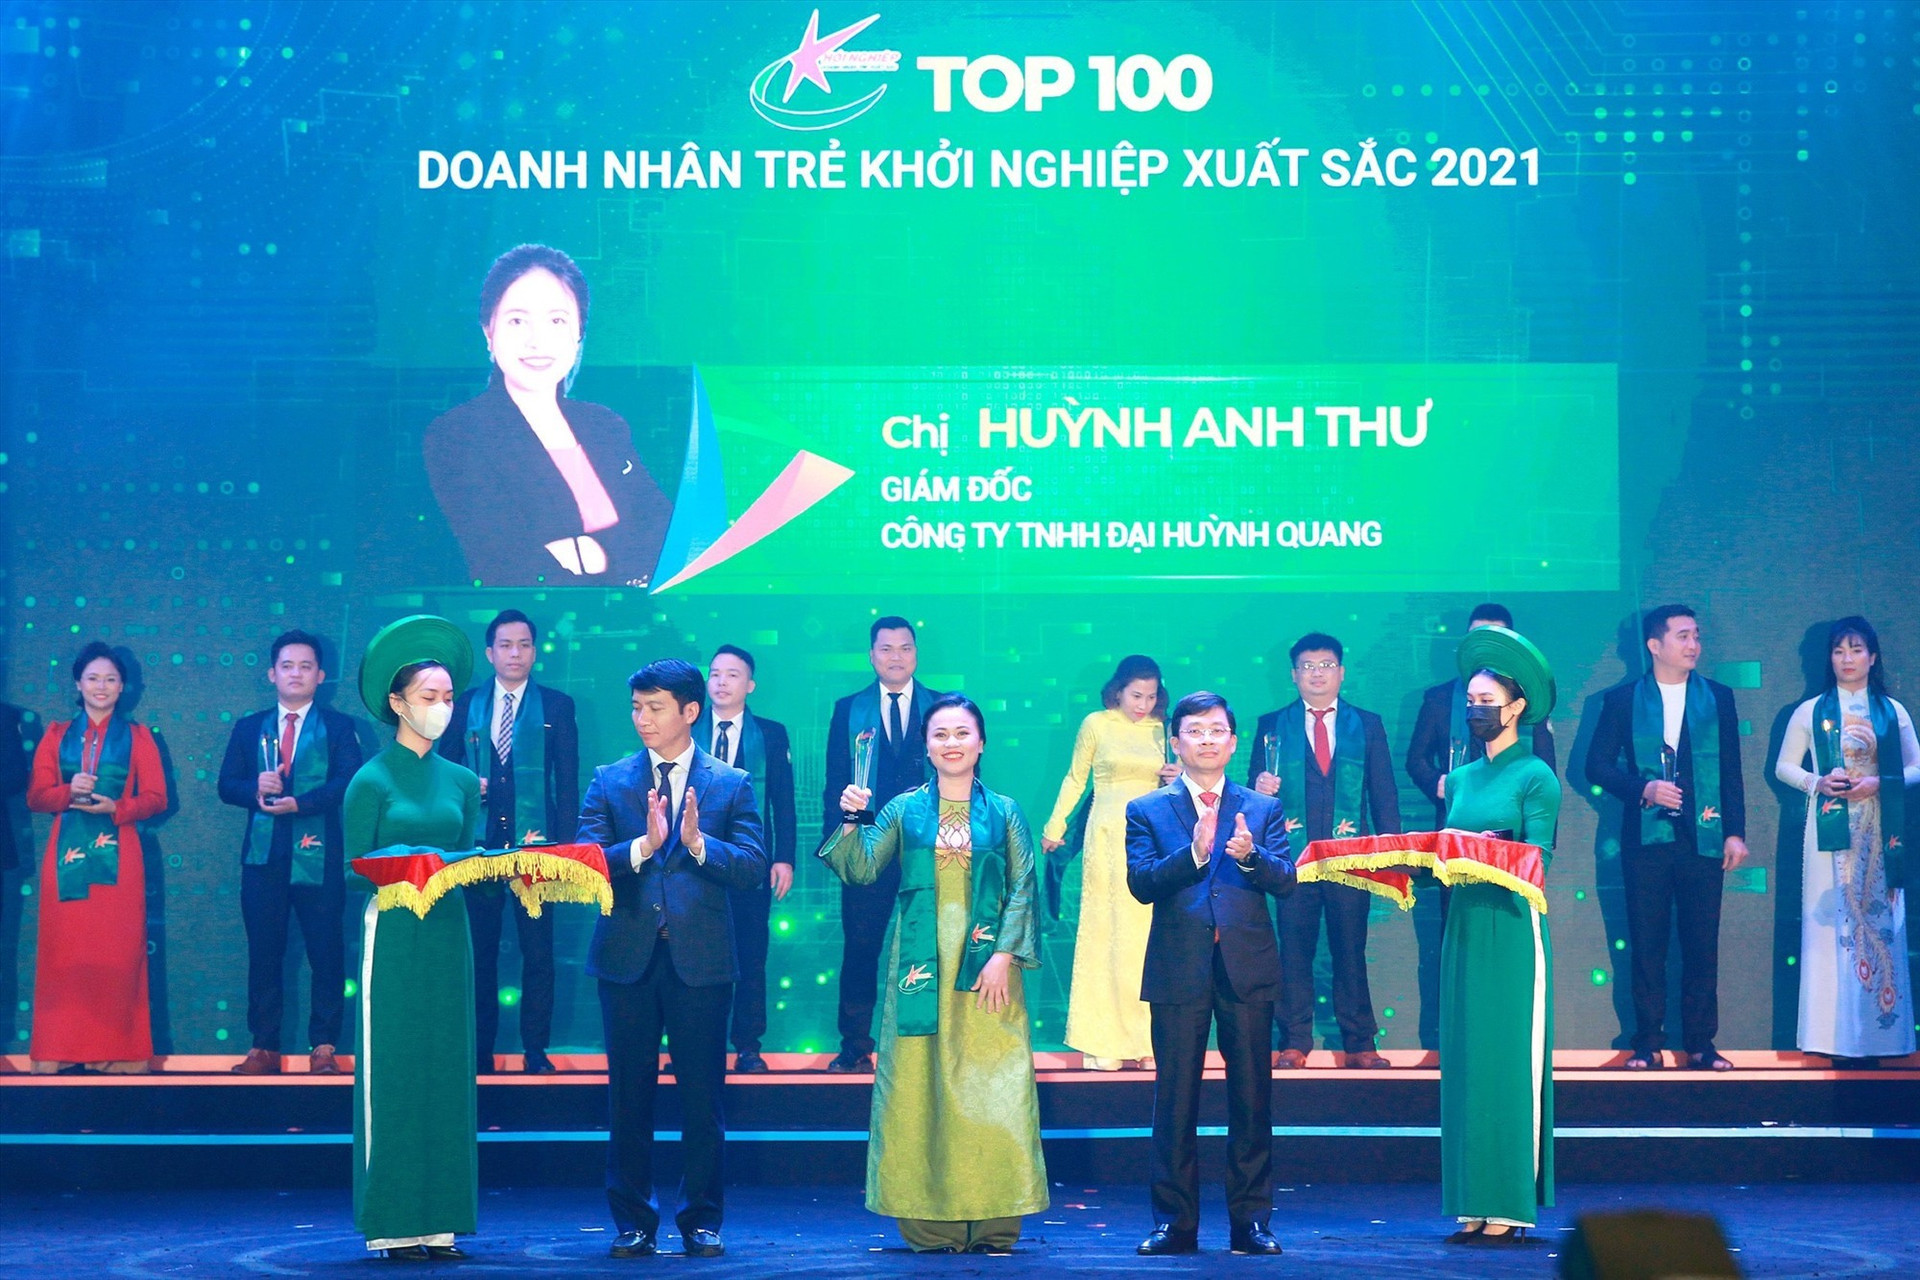 Chị Huỳnh Anh Thư - Giám đốc Công ty TNHH Đại Huỳnh Quang nhận danh hiệu Doanh nhân trẻ khởi nghiệp xuất sắc 2021. Ảnh: BTC